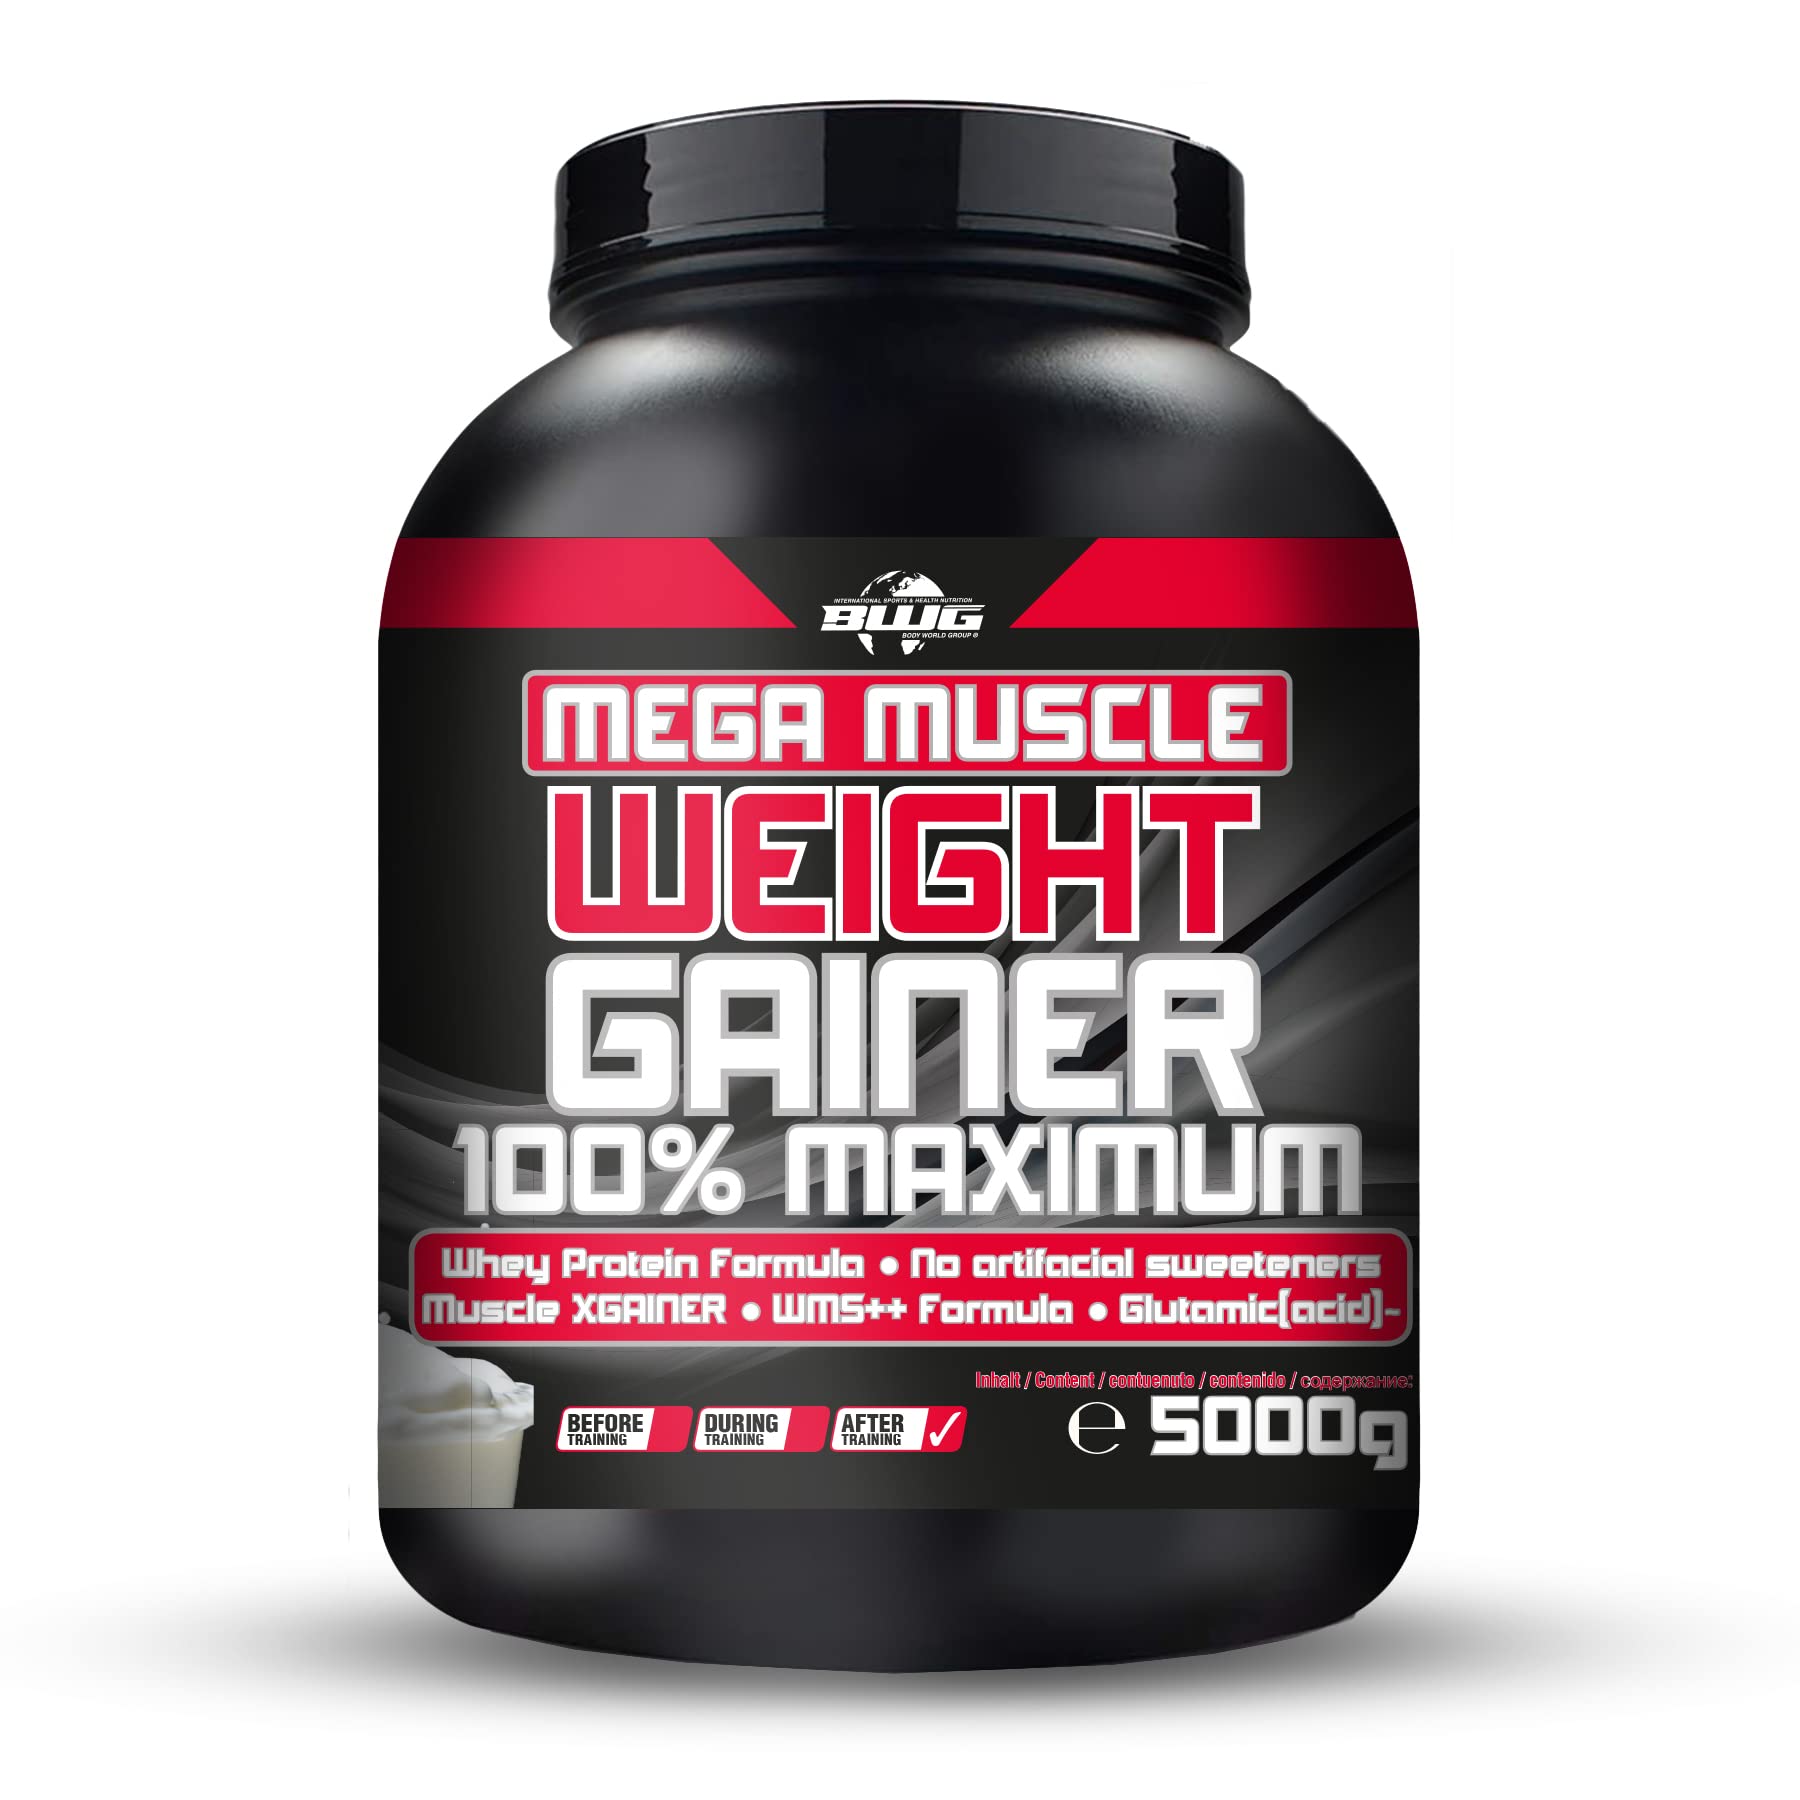 BWG Mega Muscle Weight Gainer 100% Maximum - perfekt für HardGainer und Massephasen – Kraftaufbau - Mega Strawberry - Dose mit Dosierlöffel - (1x 5000g Dose)